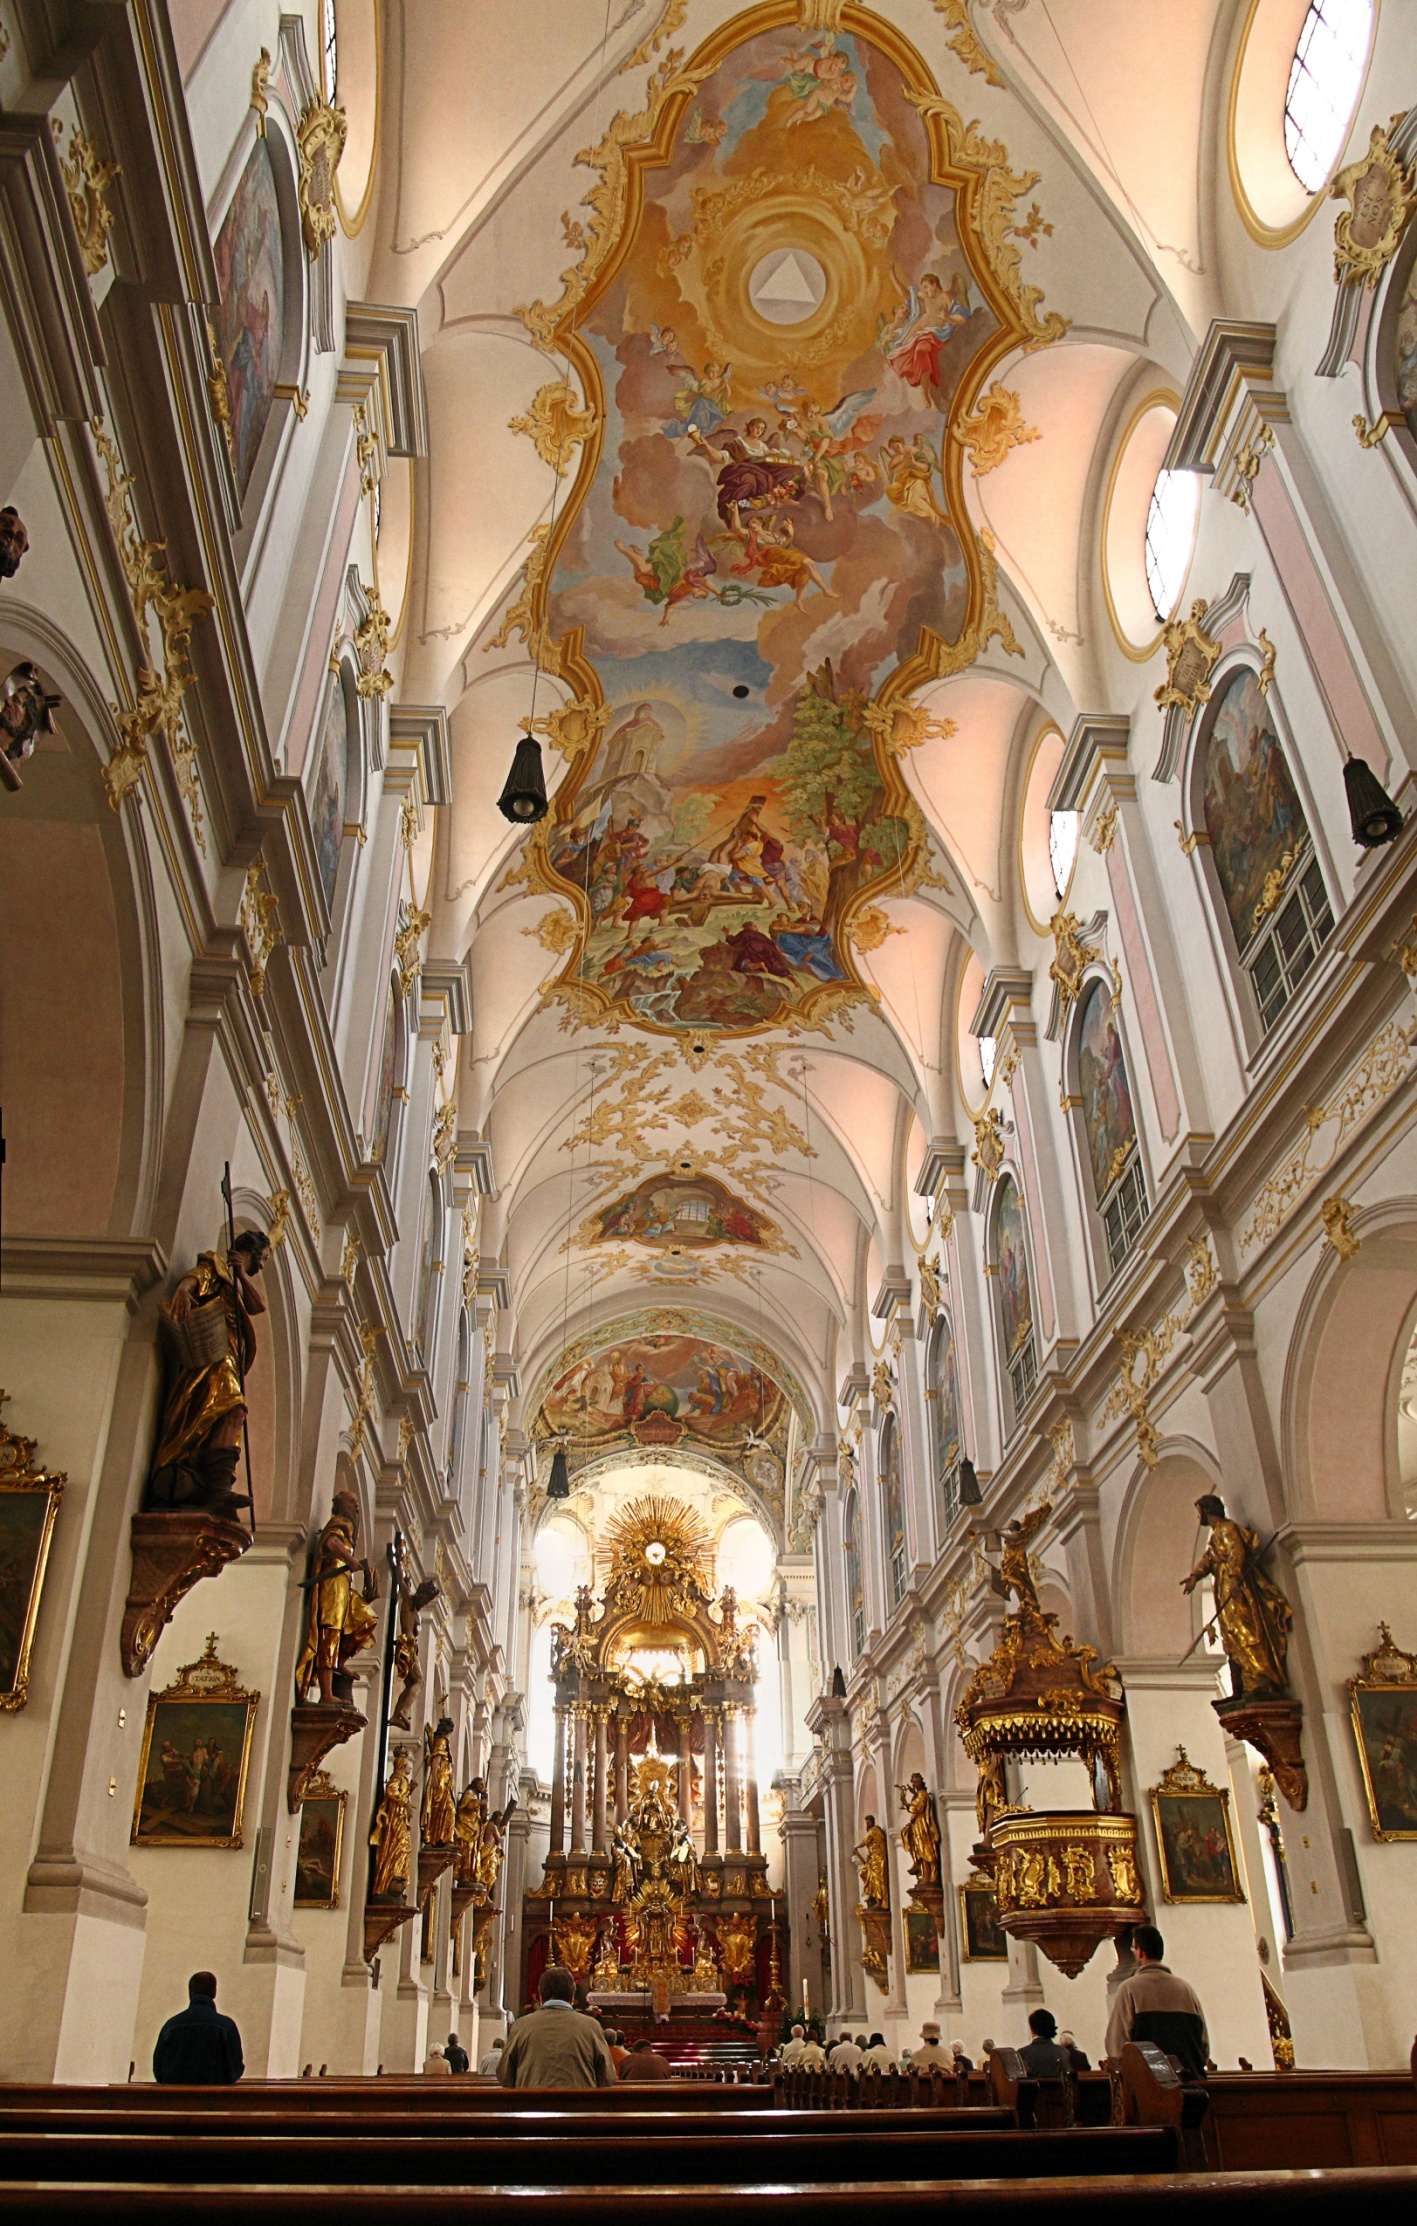 Мюнхен: церковь святого петра, фрауэнкирхе и церковь святого духа